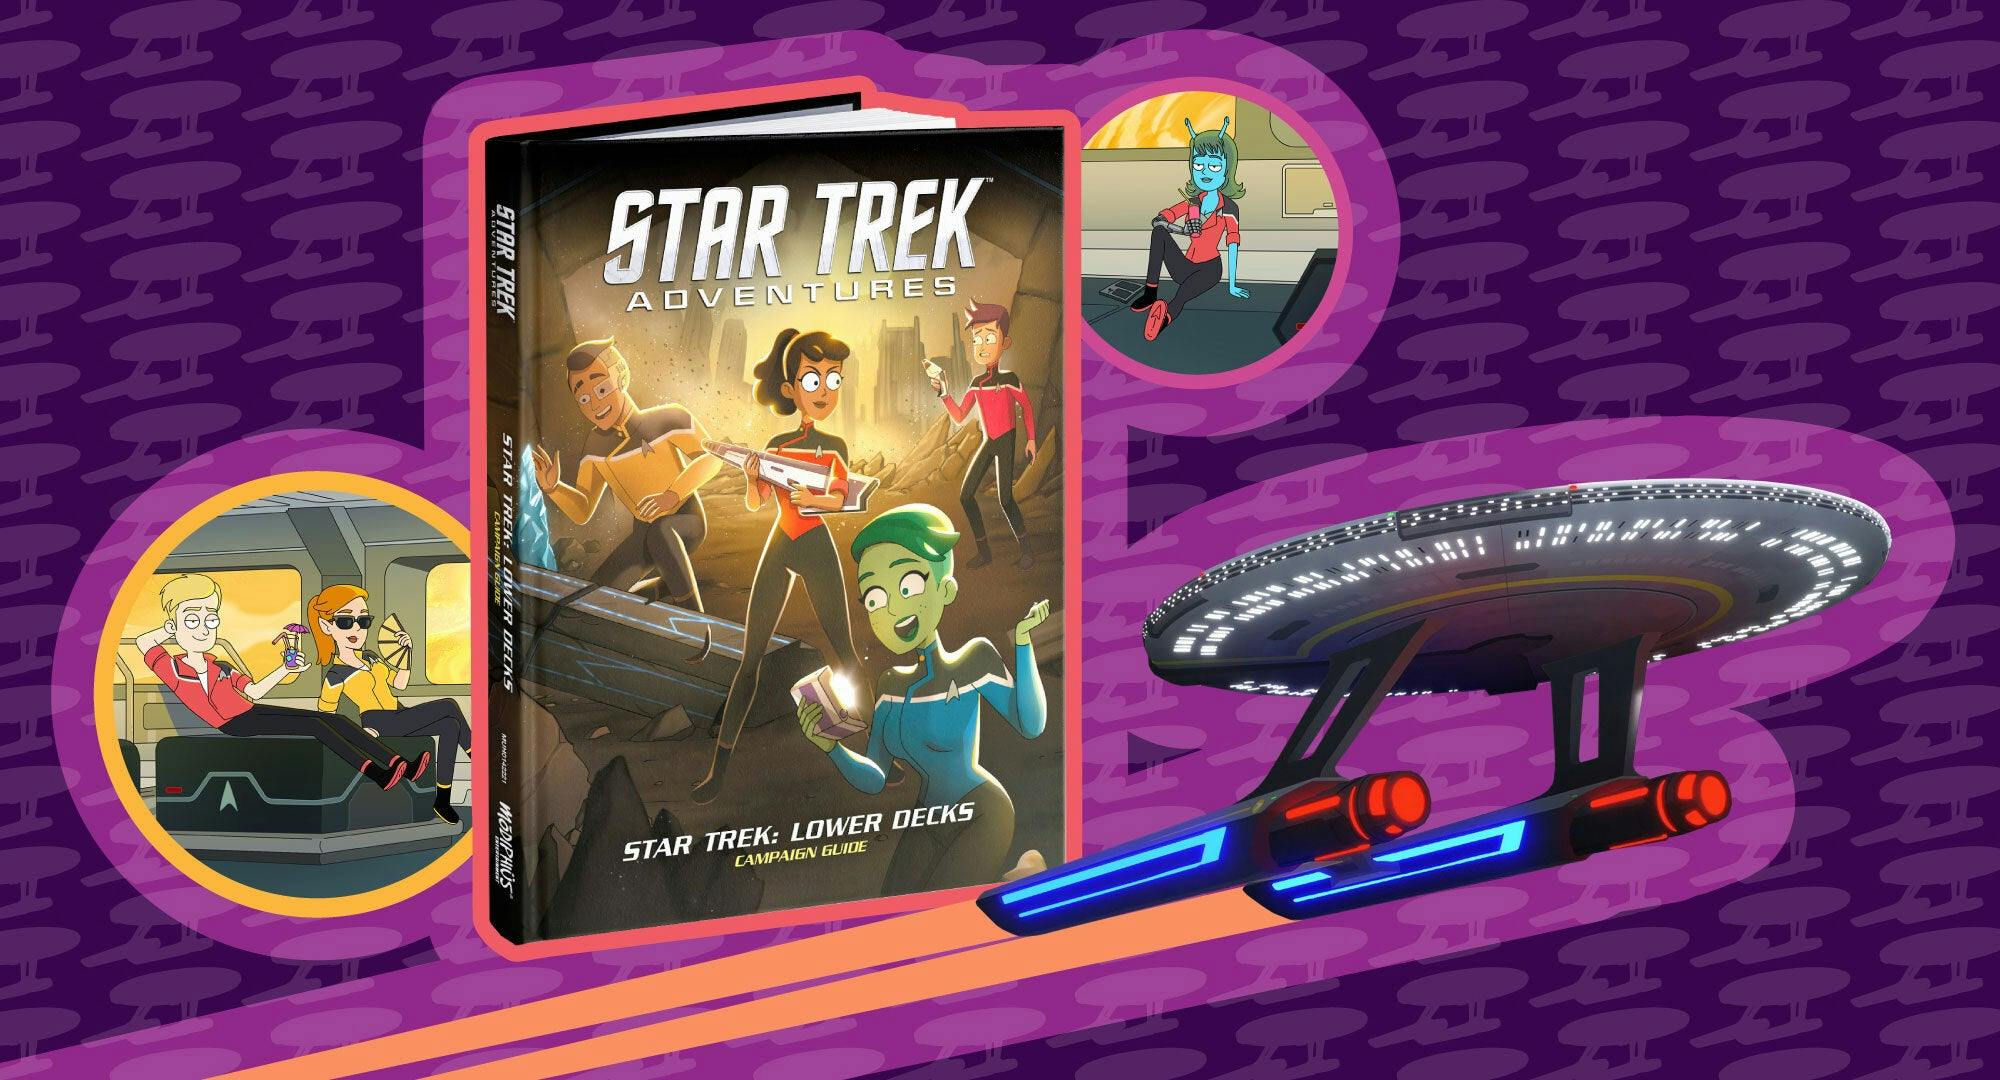 Star Trek Adventures' Lower Decks collaboration